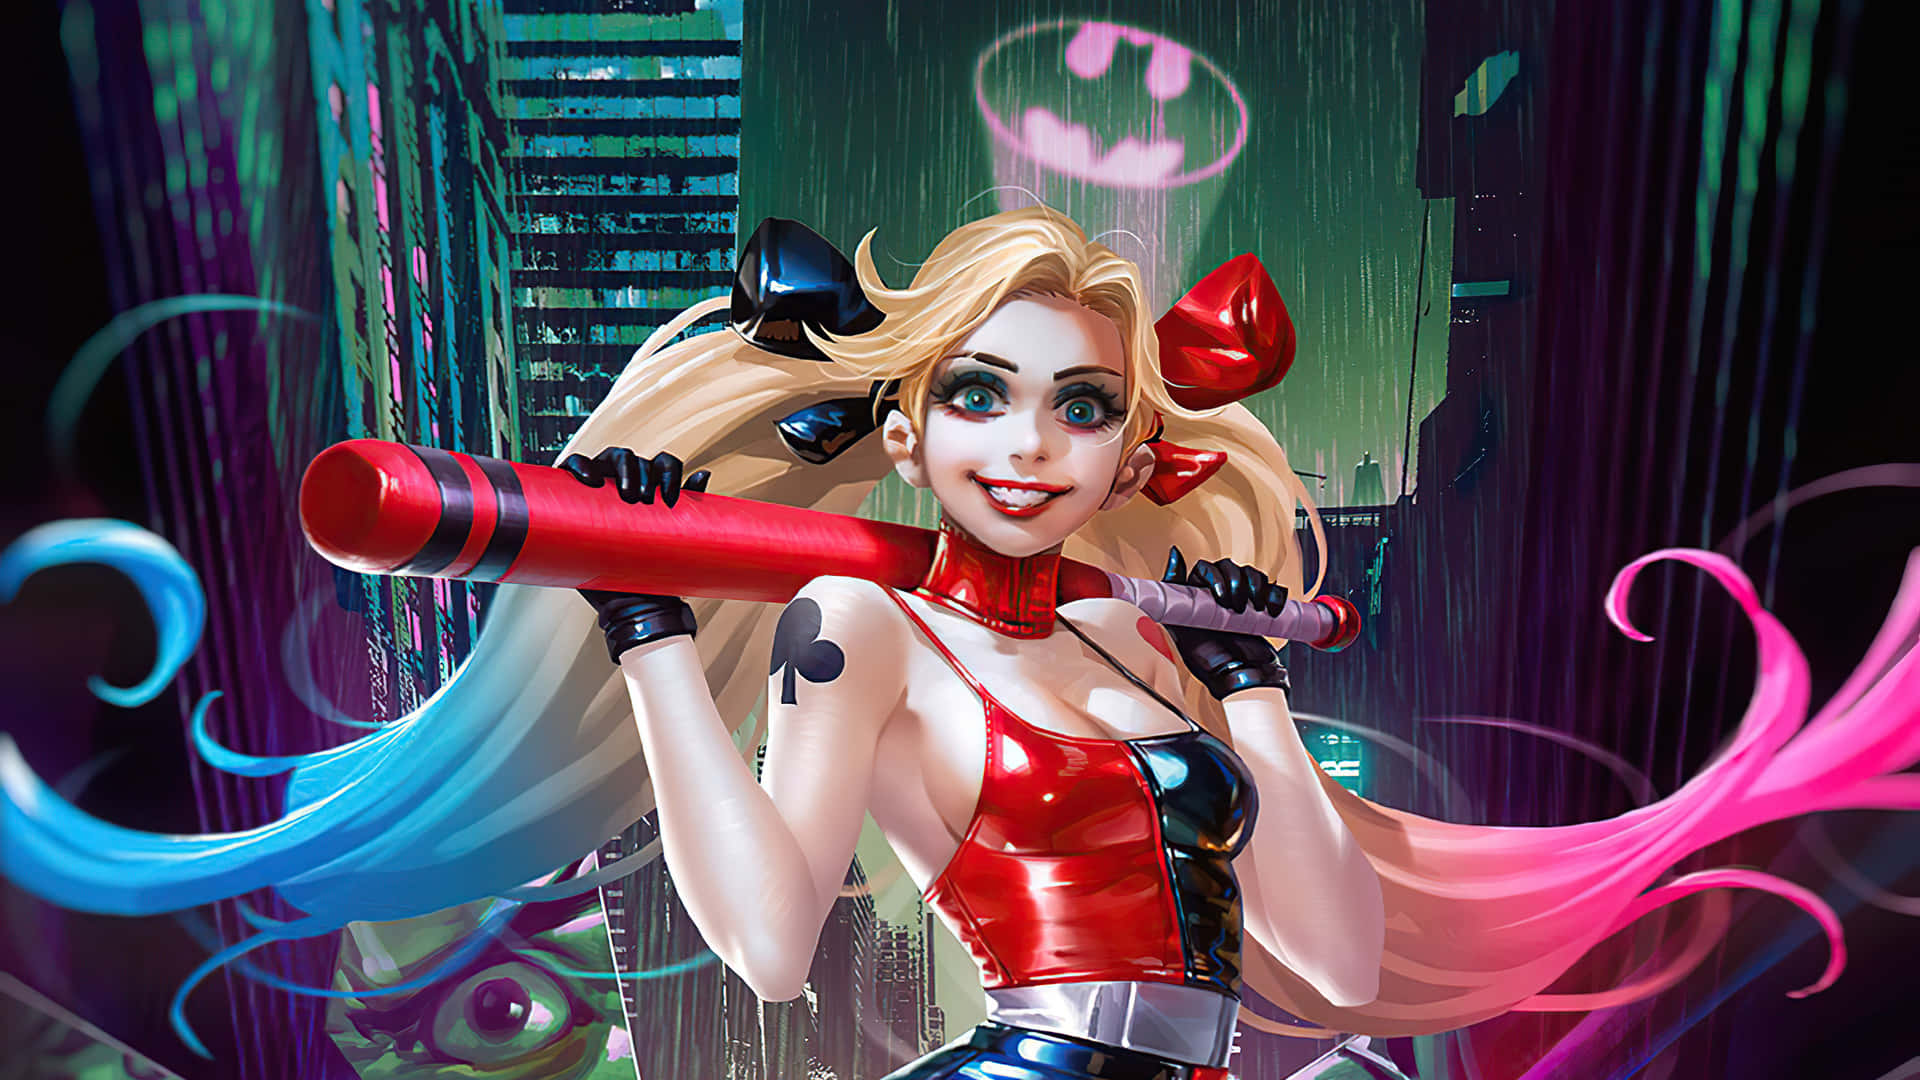 Fundoda Versão Animada Em Desenho Da Harley Quinn.